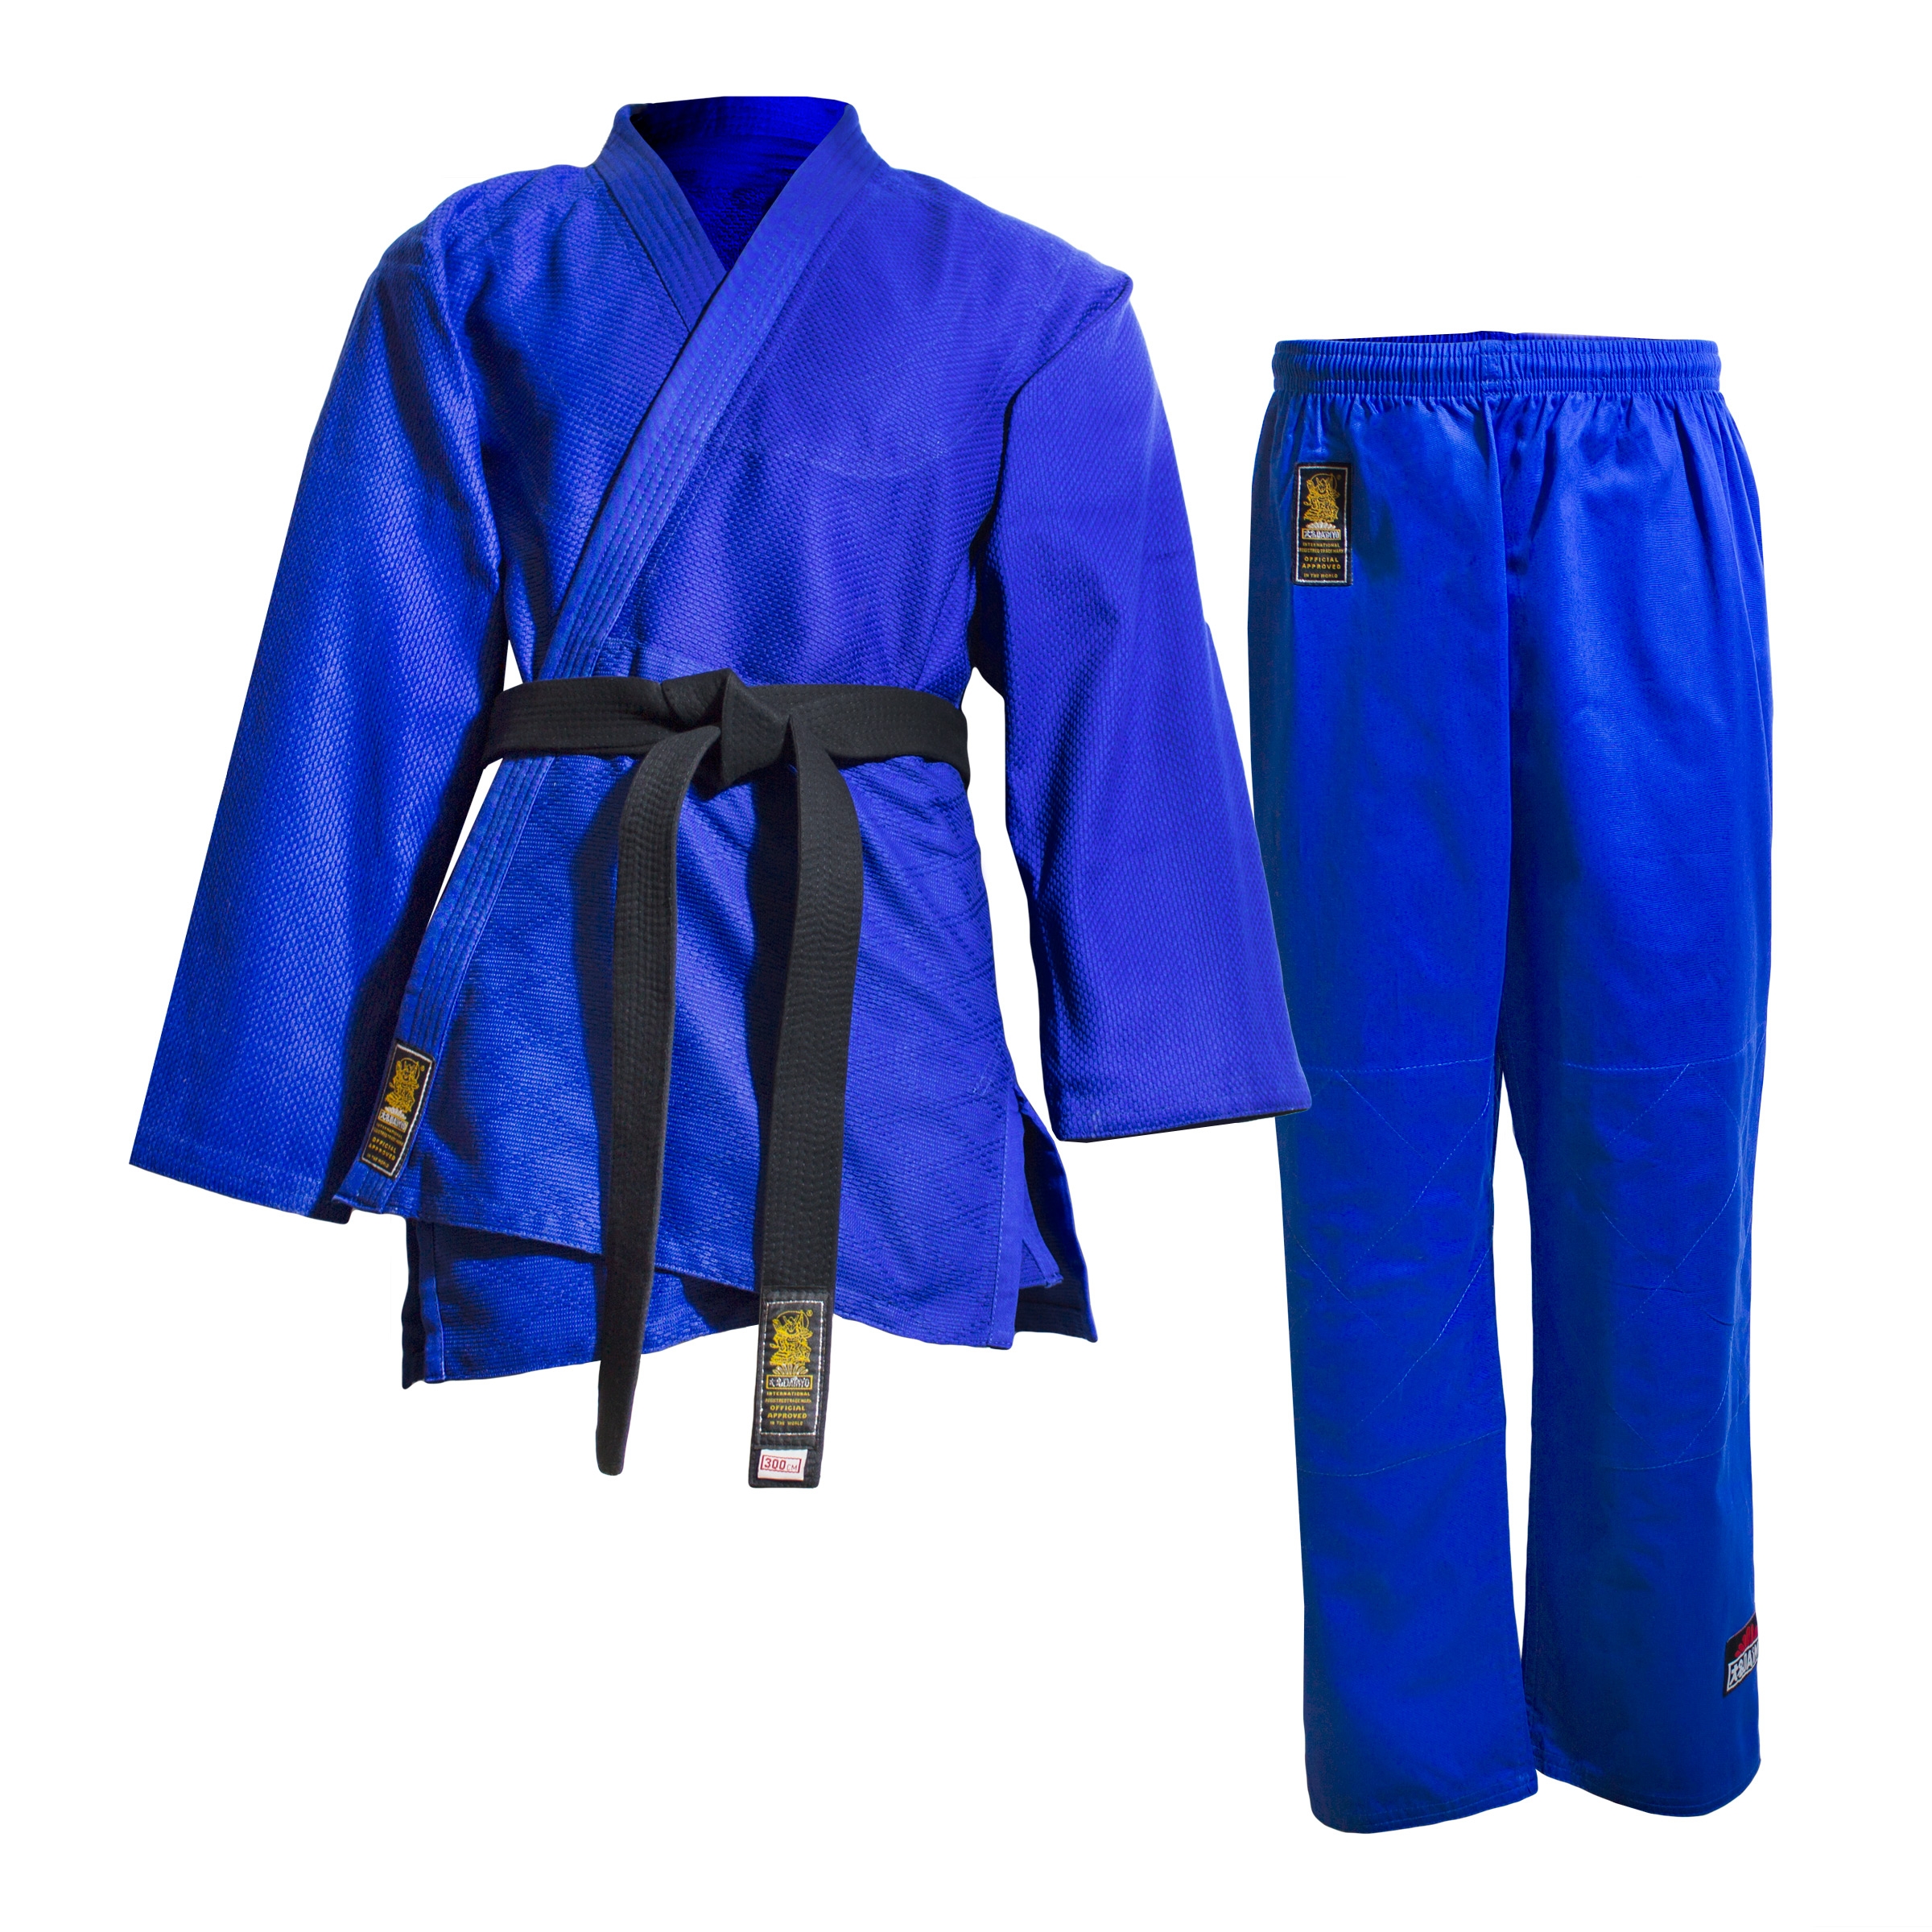 Aasta Azul Judo Gi//Traje con Libre cintur/ón 000//110